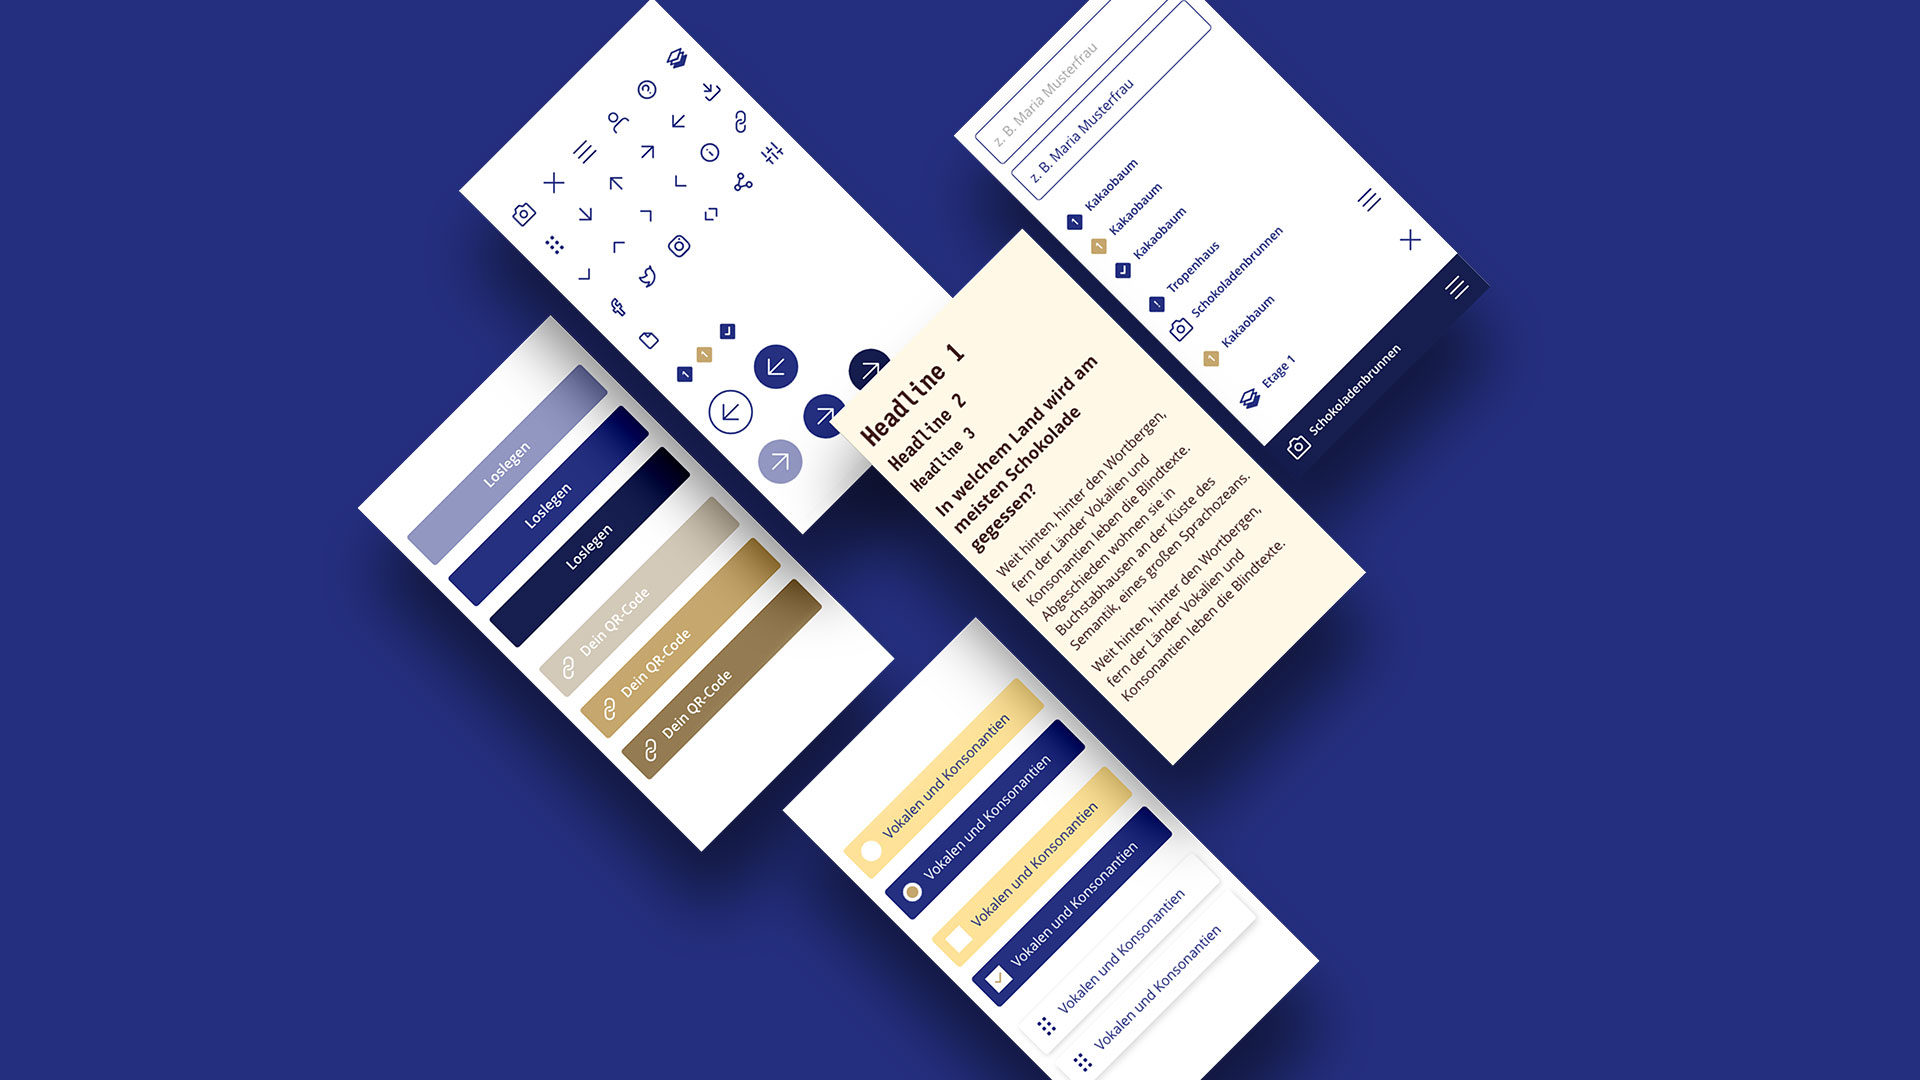 Fünf rechteckige Flächen auf blauem Hintergrund. In den Flächen sind die grafischen Stil-Elemente der App zu sehen wie Icons, Schriften und Buttons.